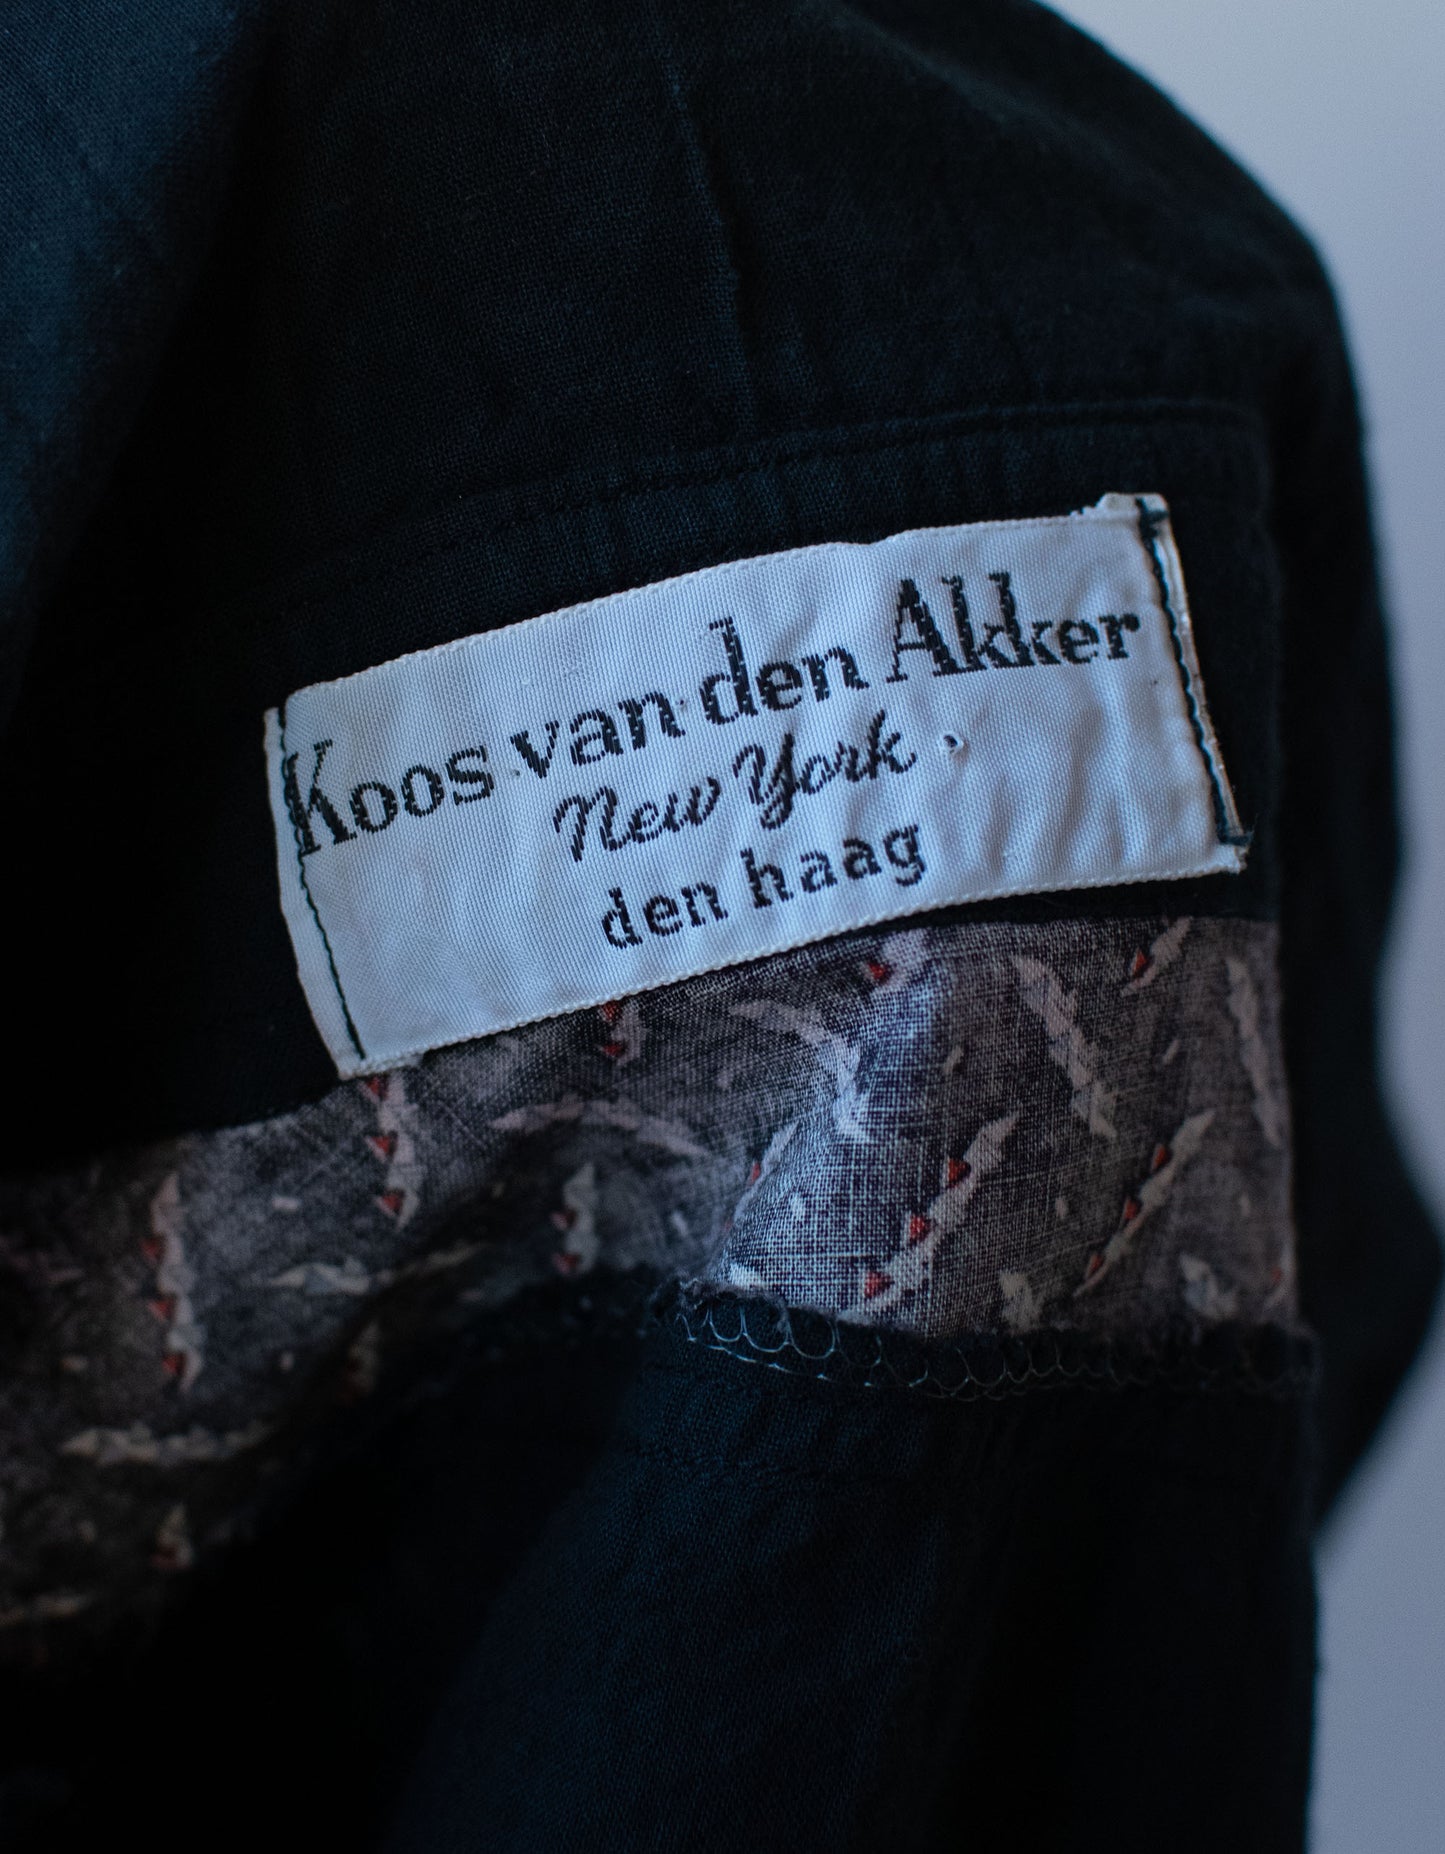 Dark Floral Print Blouse | Koos van den Akker